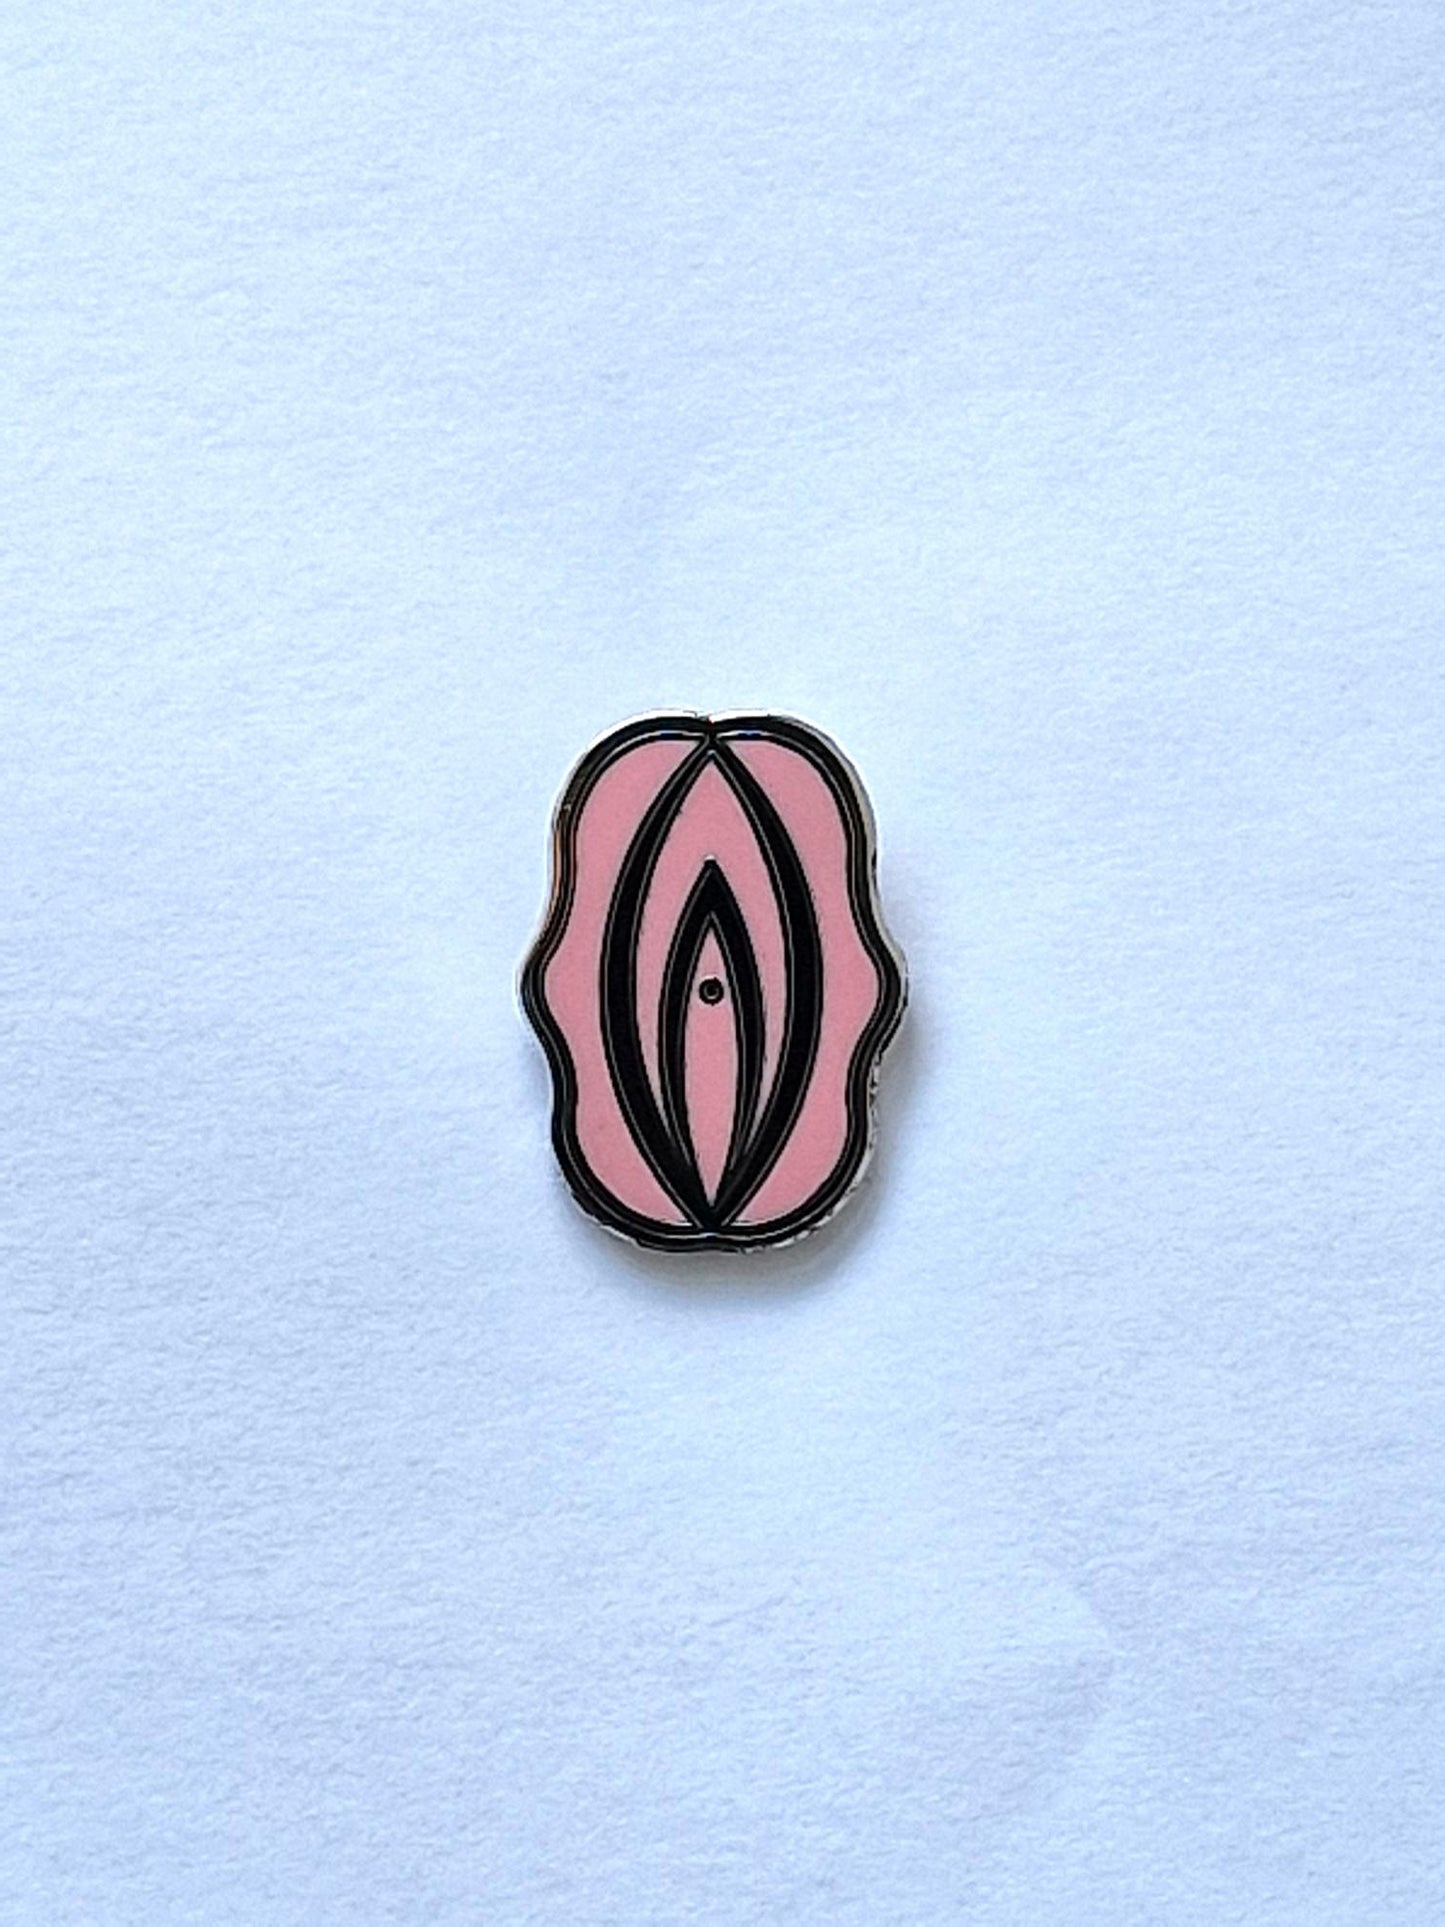 En fantastisk och rolig pins i form av en rosa och svart fiffi.